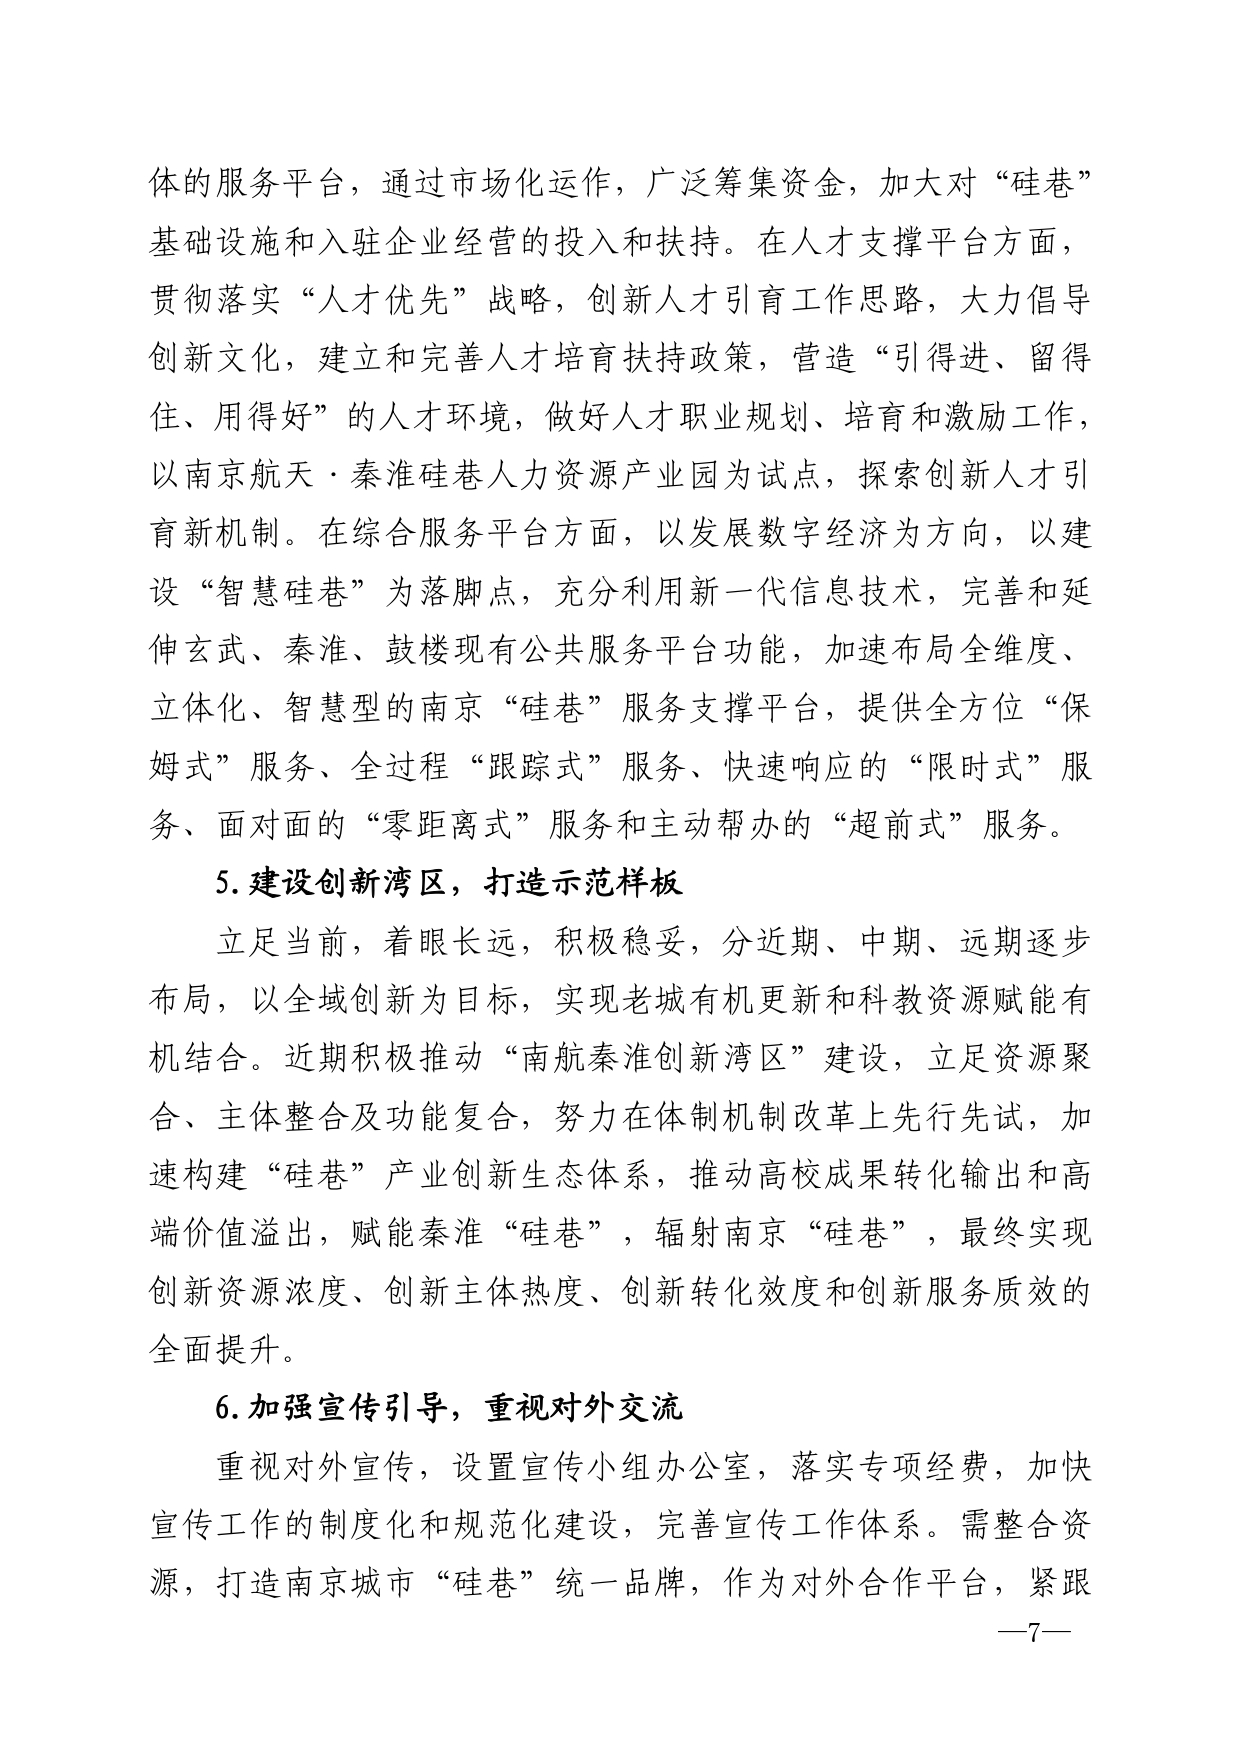 2021年第6期（关于南京城市硅巷发展的若干建议）-印刷版_page-0007.jpg